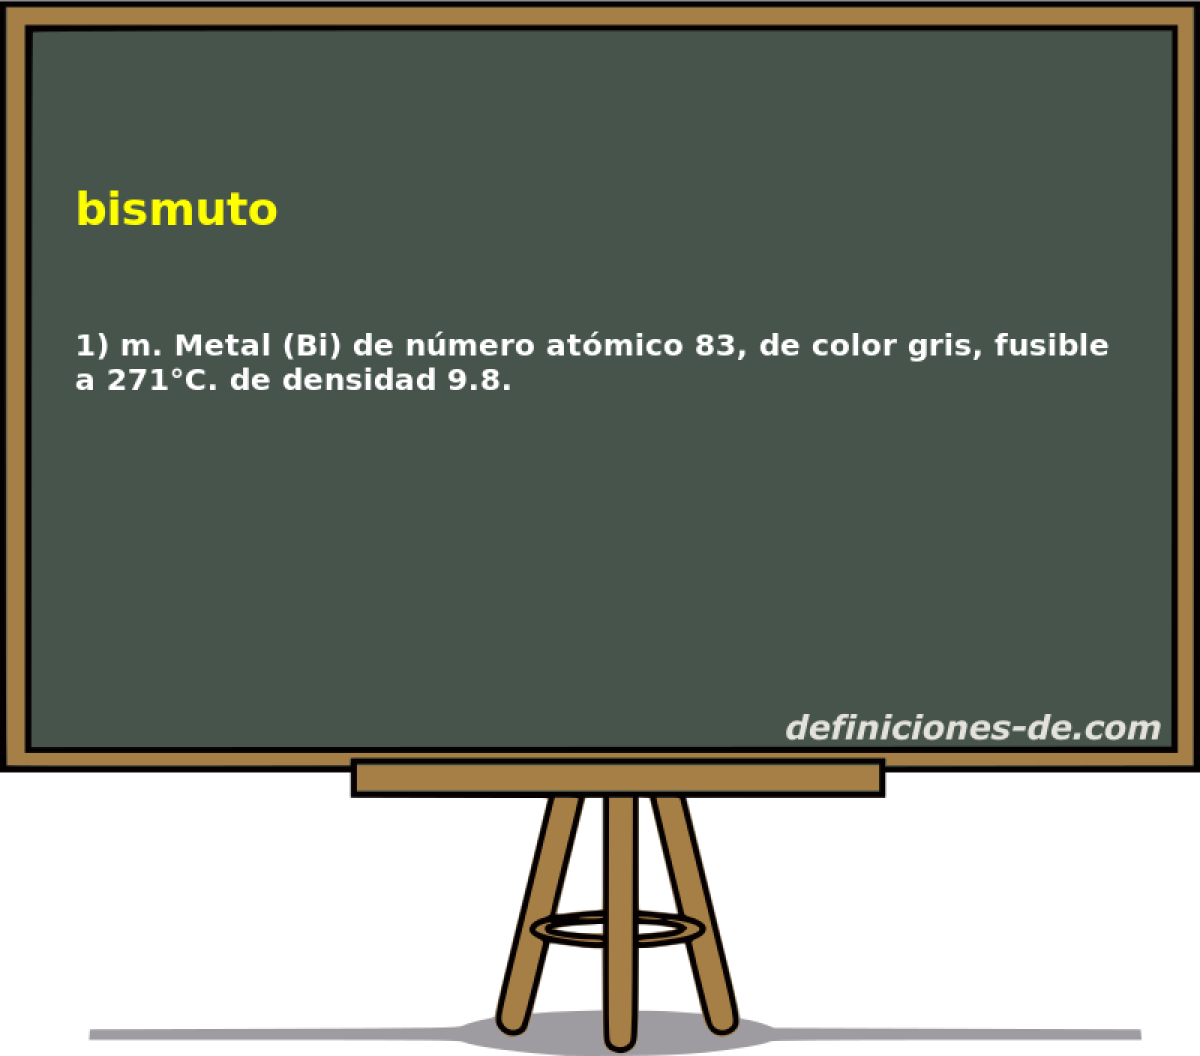 bismuto 